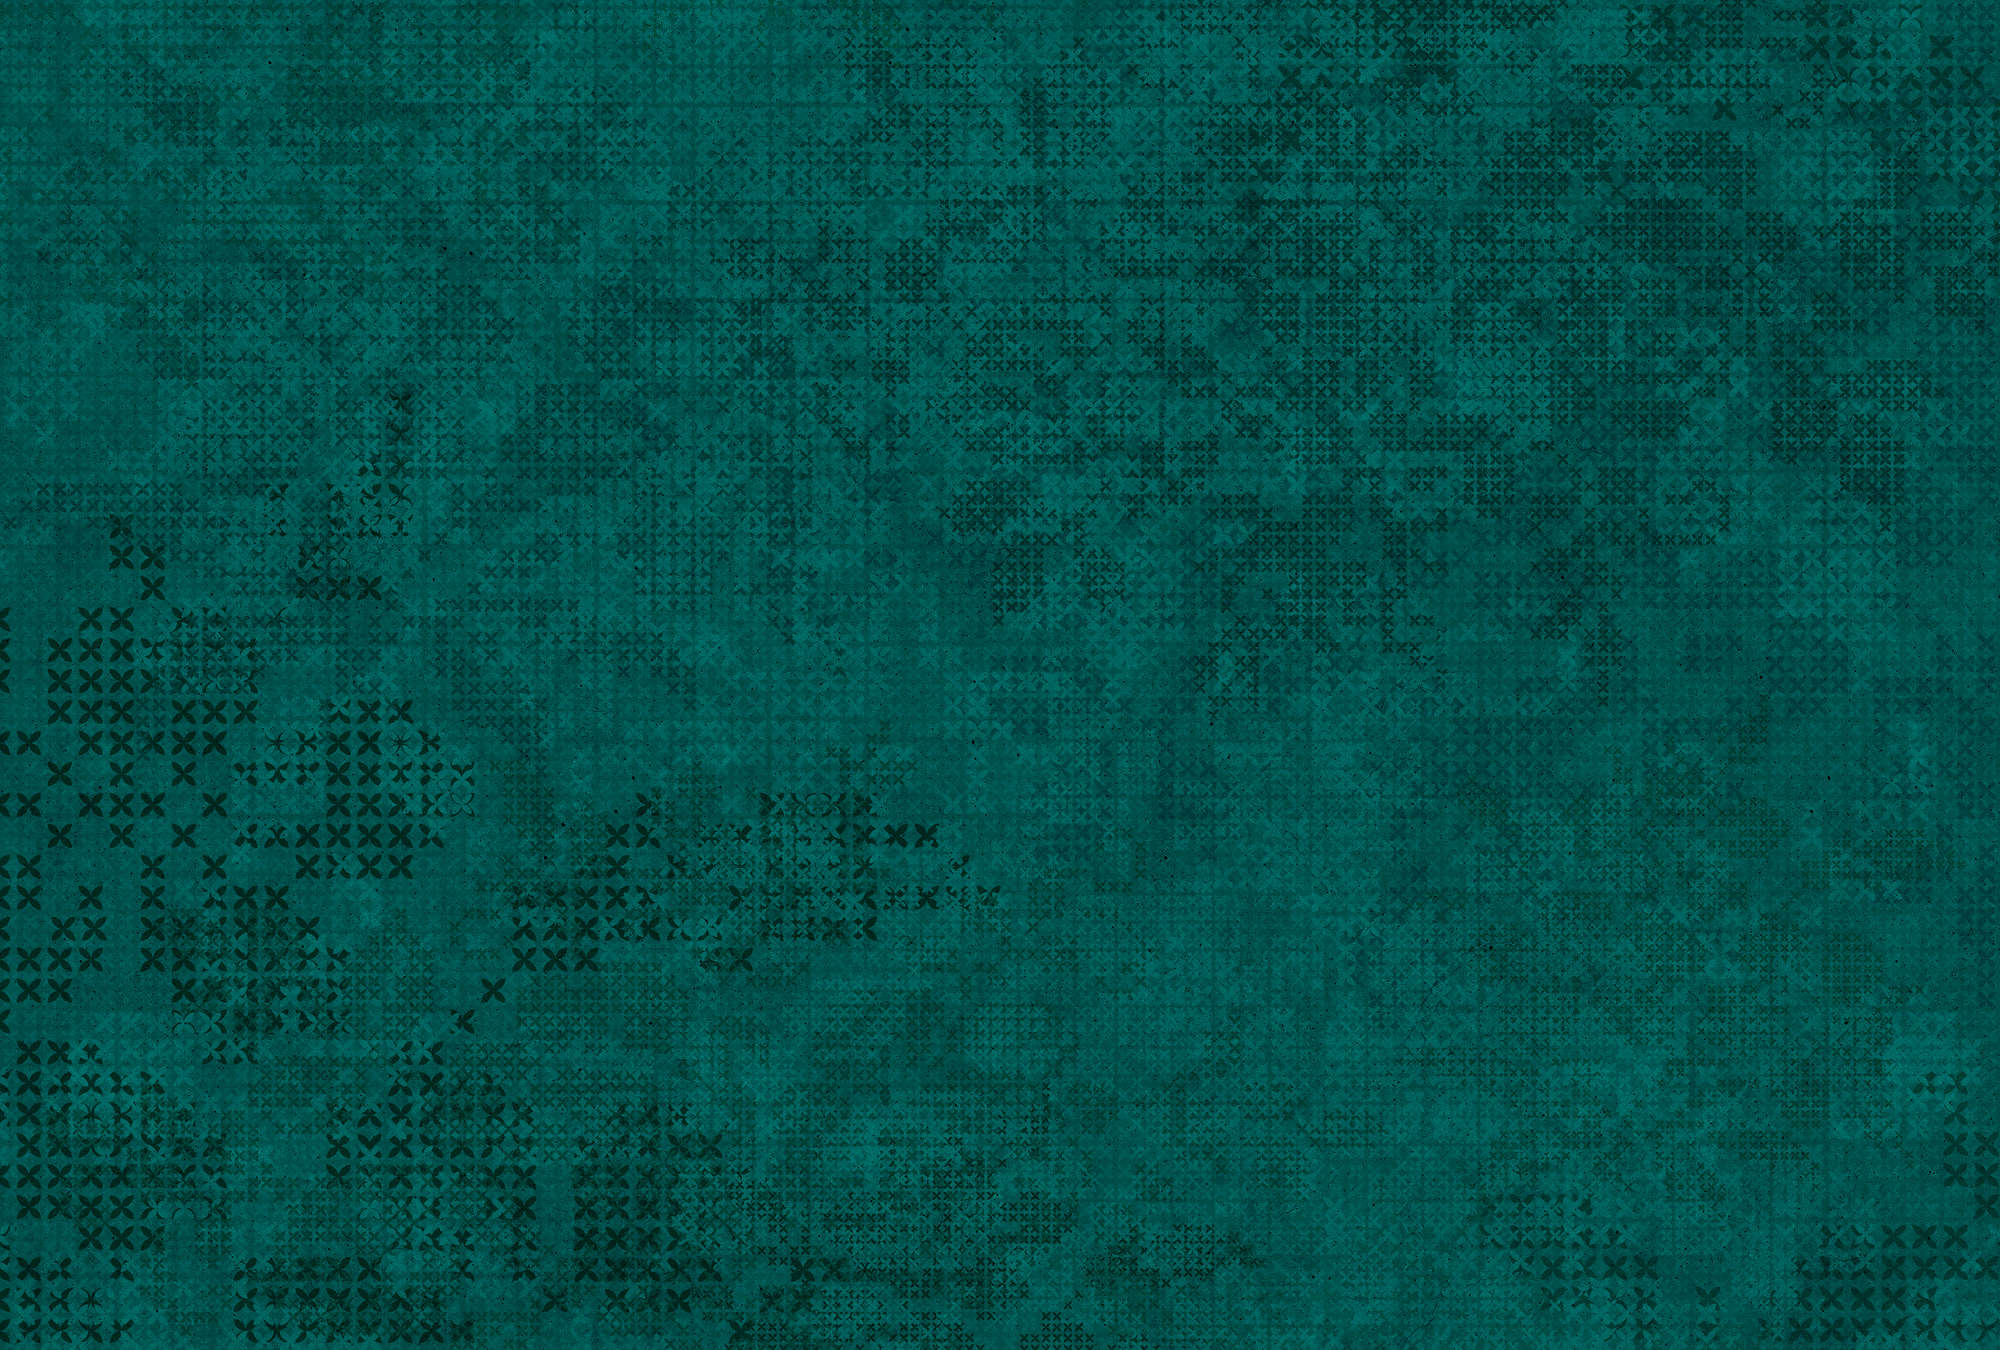             Fototapete Kreuz Muster im Pixel-Stil – Grün, Schwarz
        